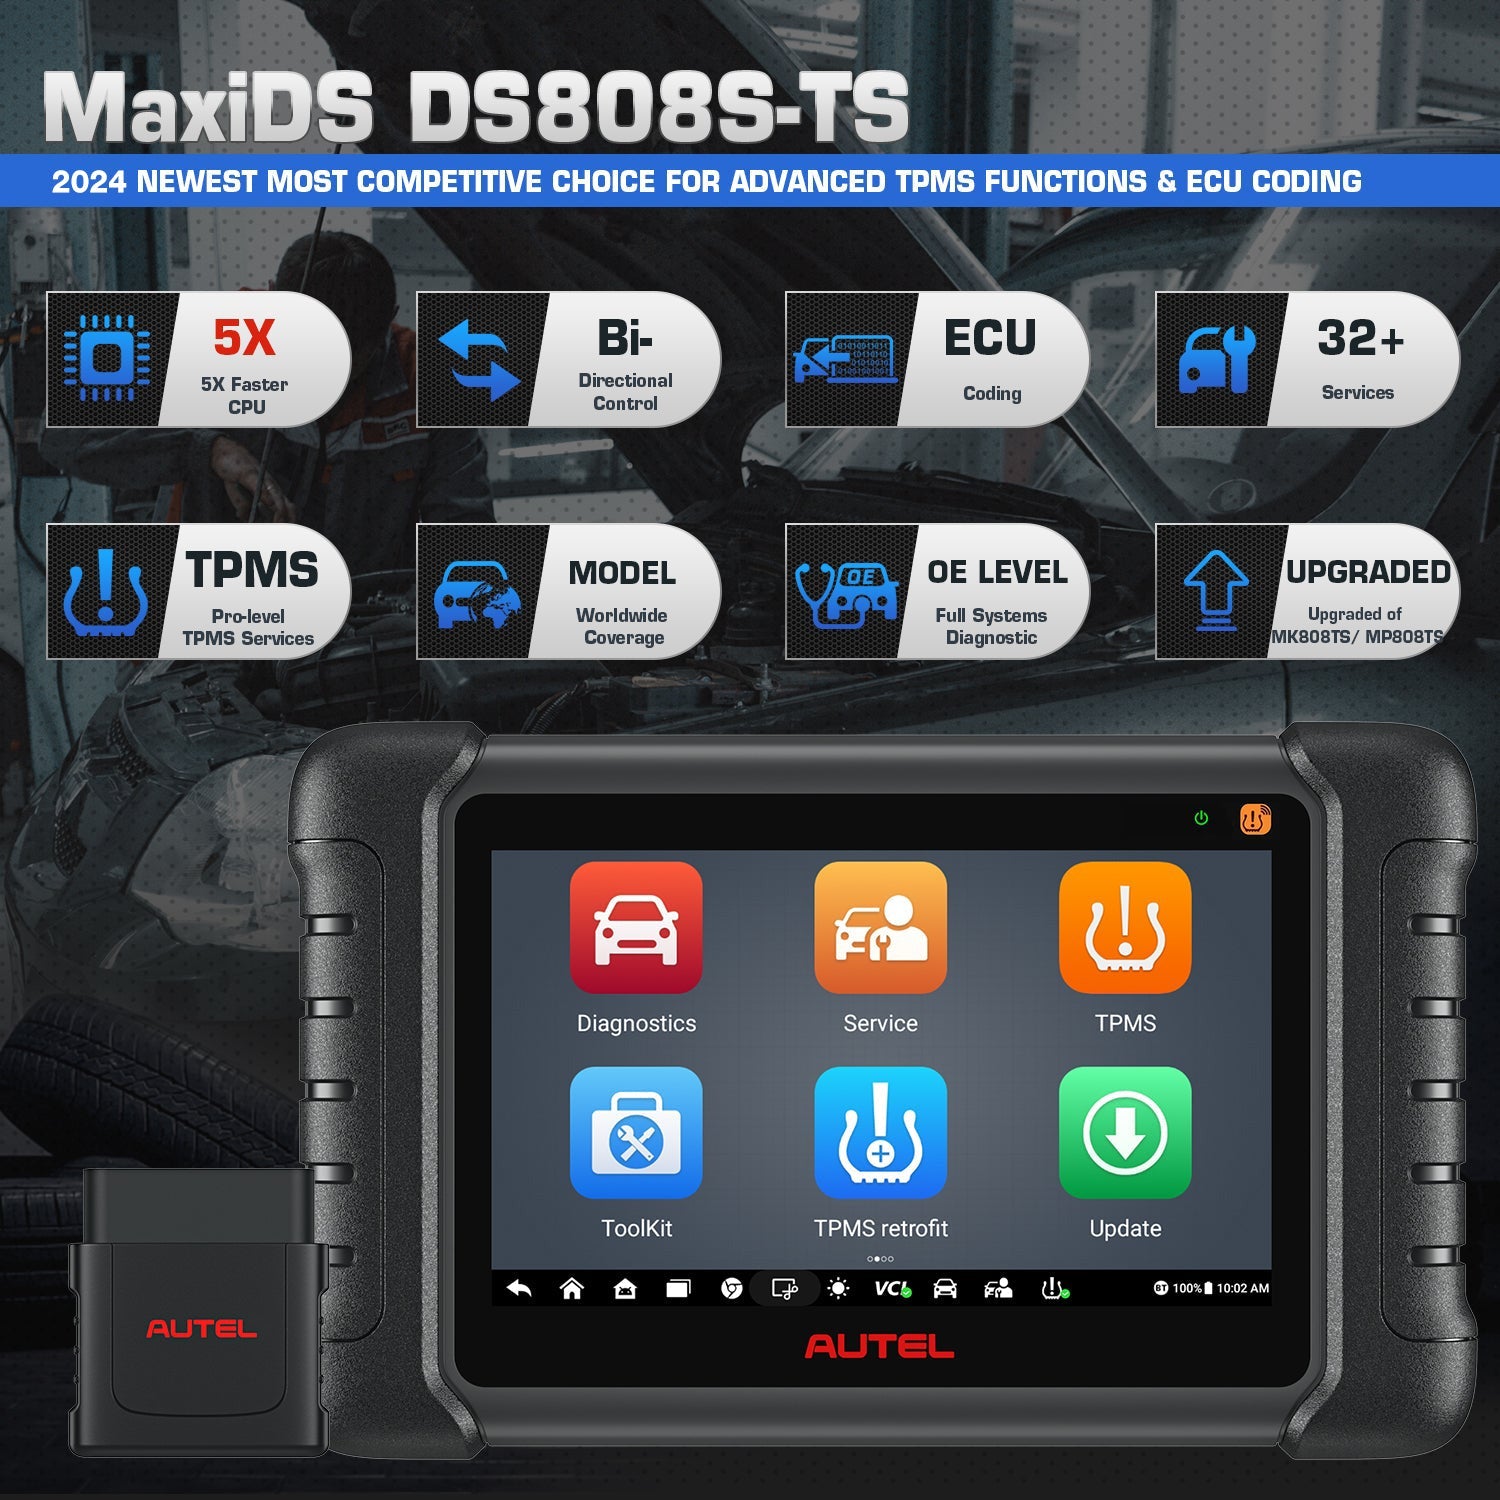 Autel MaxiDAS DS808S-TS Diagnostic Scan Tool